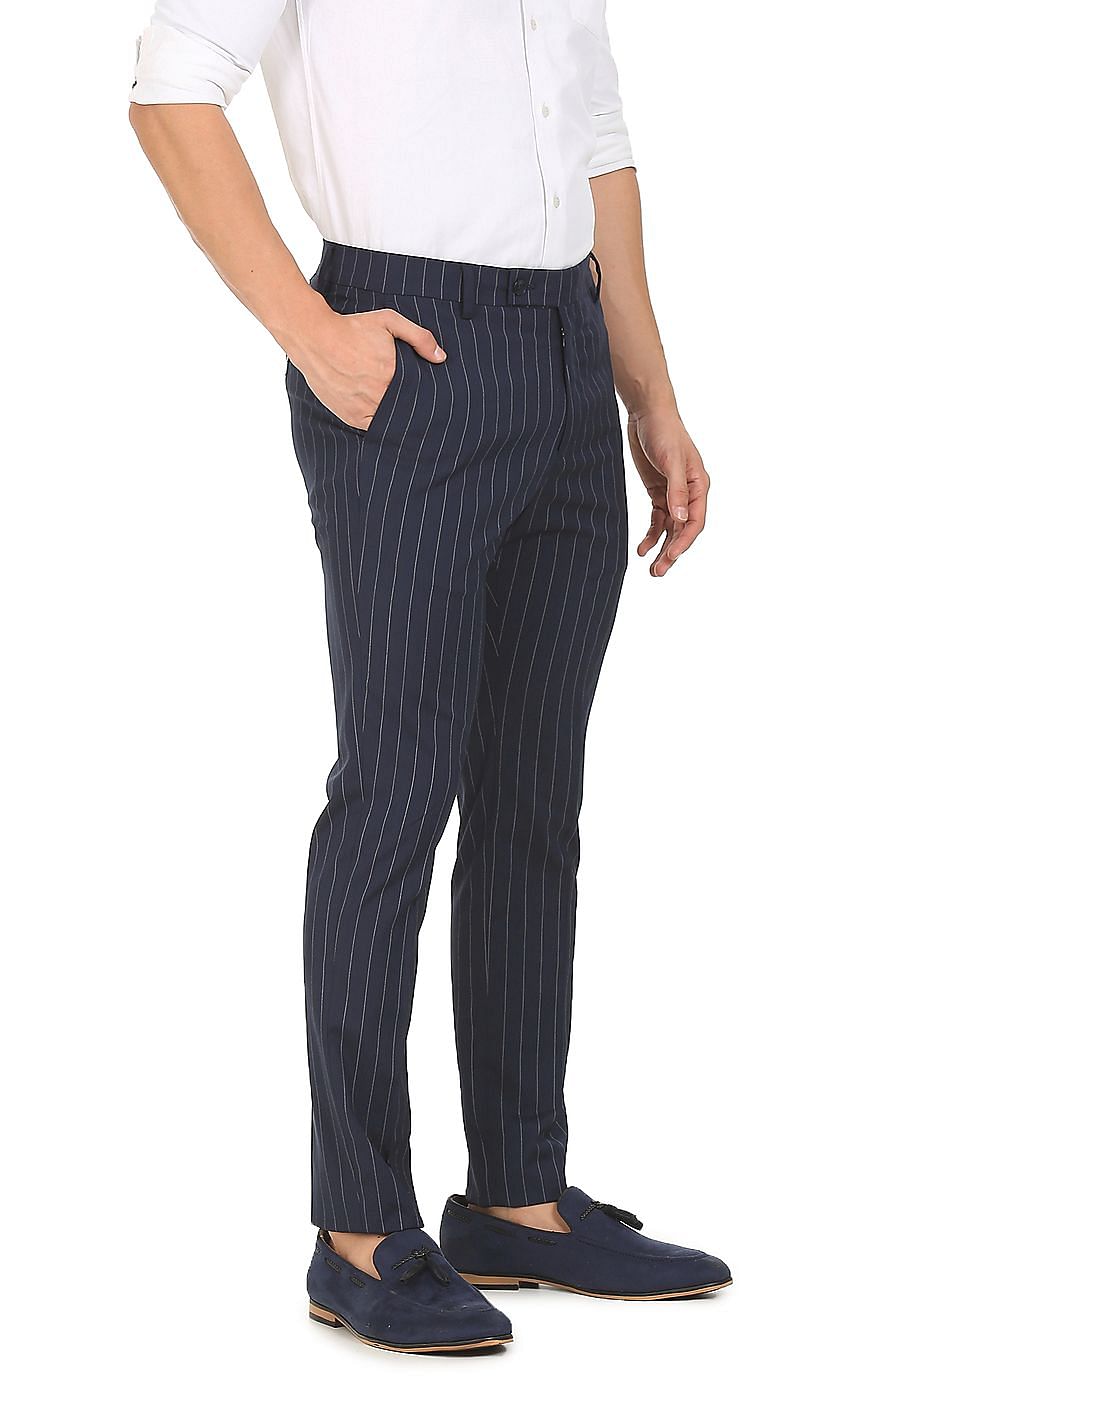 Men Striped Trousers  Buy Men Striped Trousers online in India